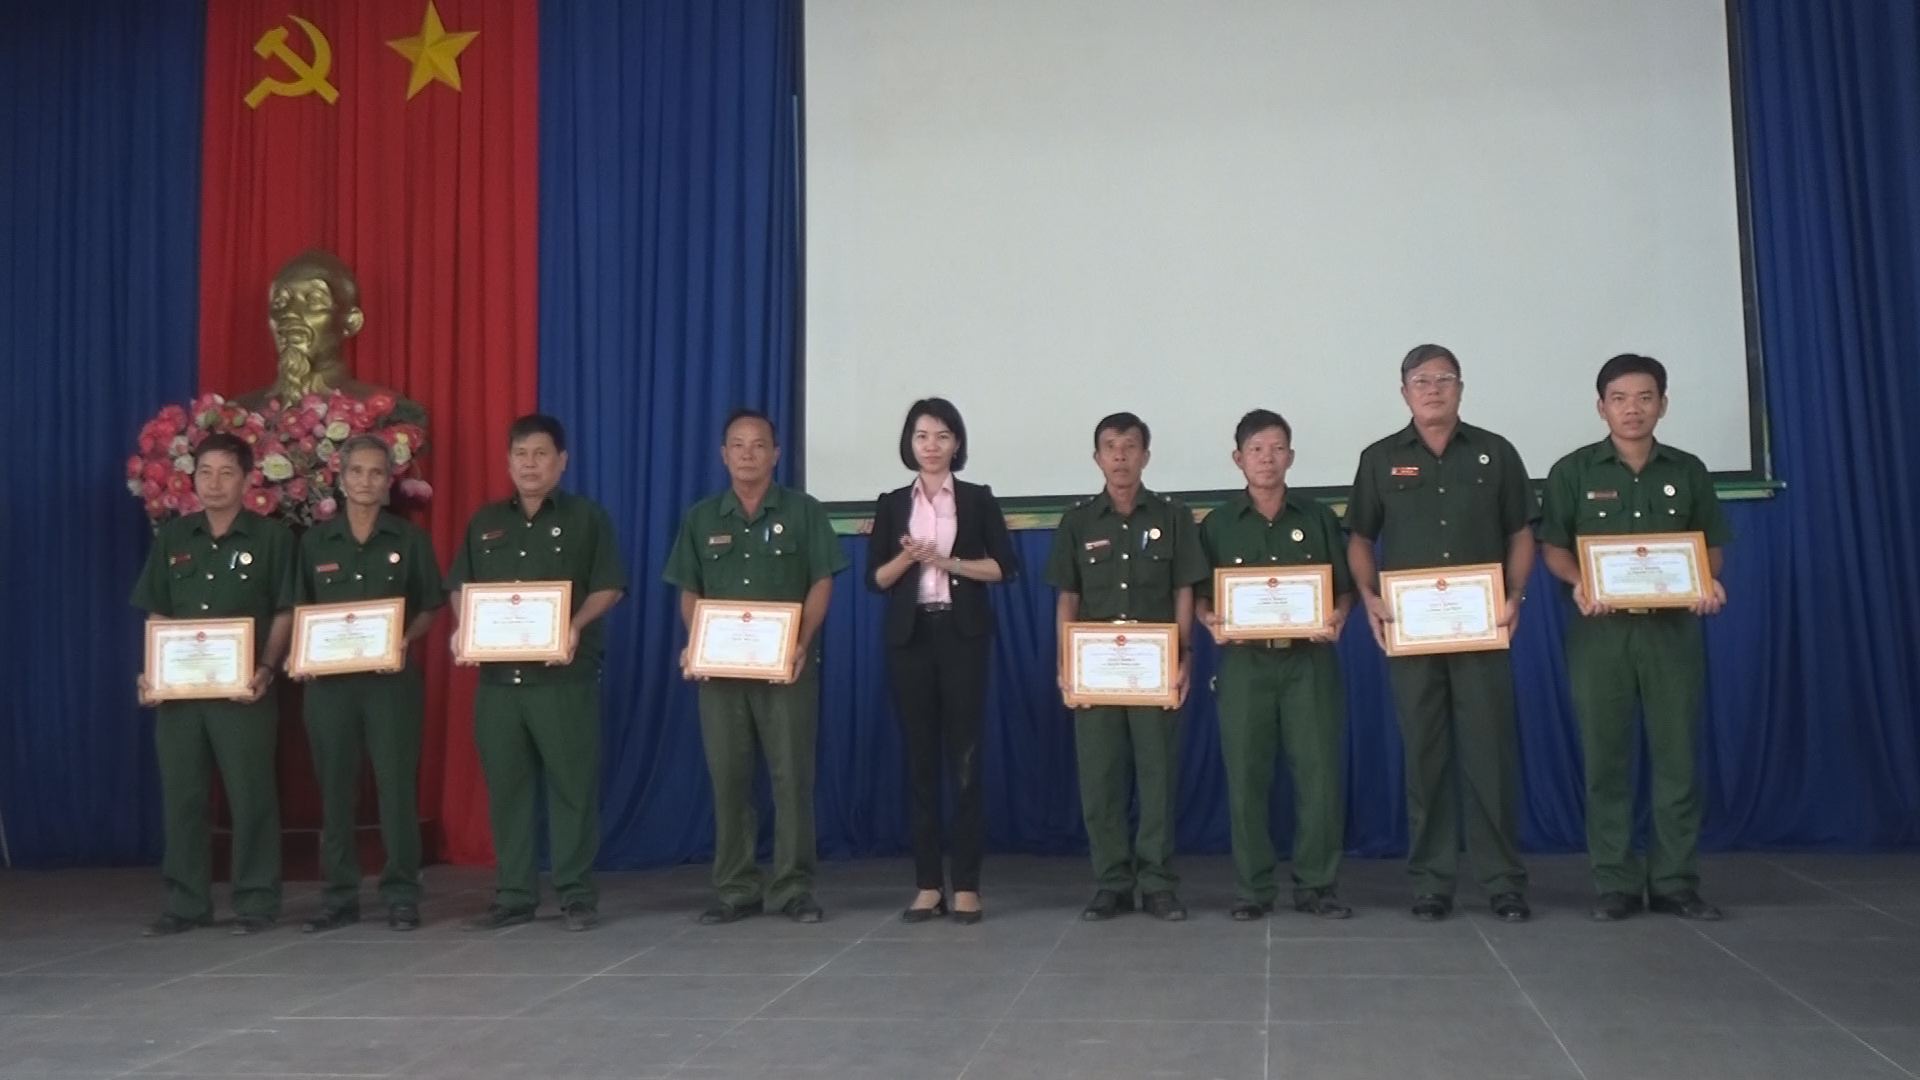 Huyện Dương Minh Châu: Tổng kết công tác Hội cựu chiến binh năm 2020